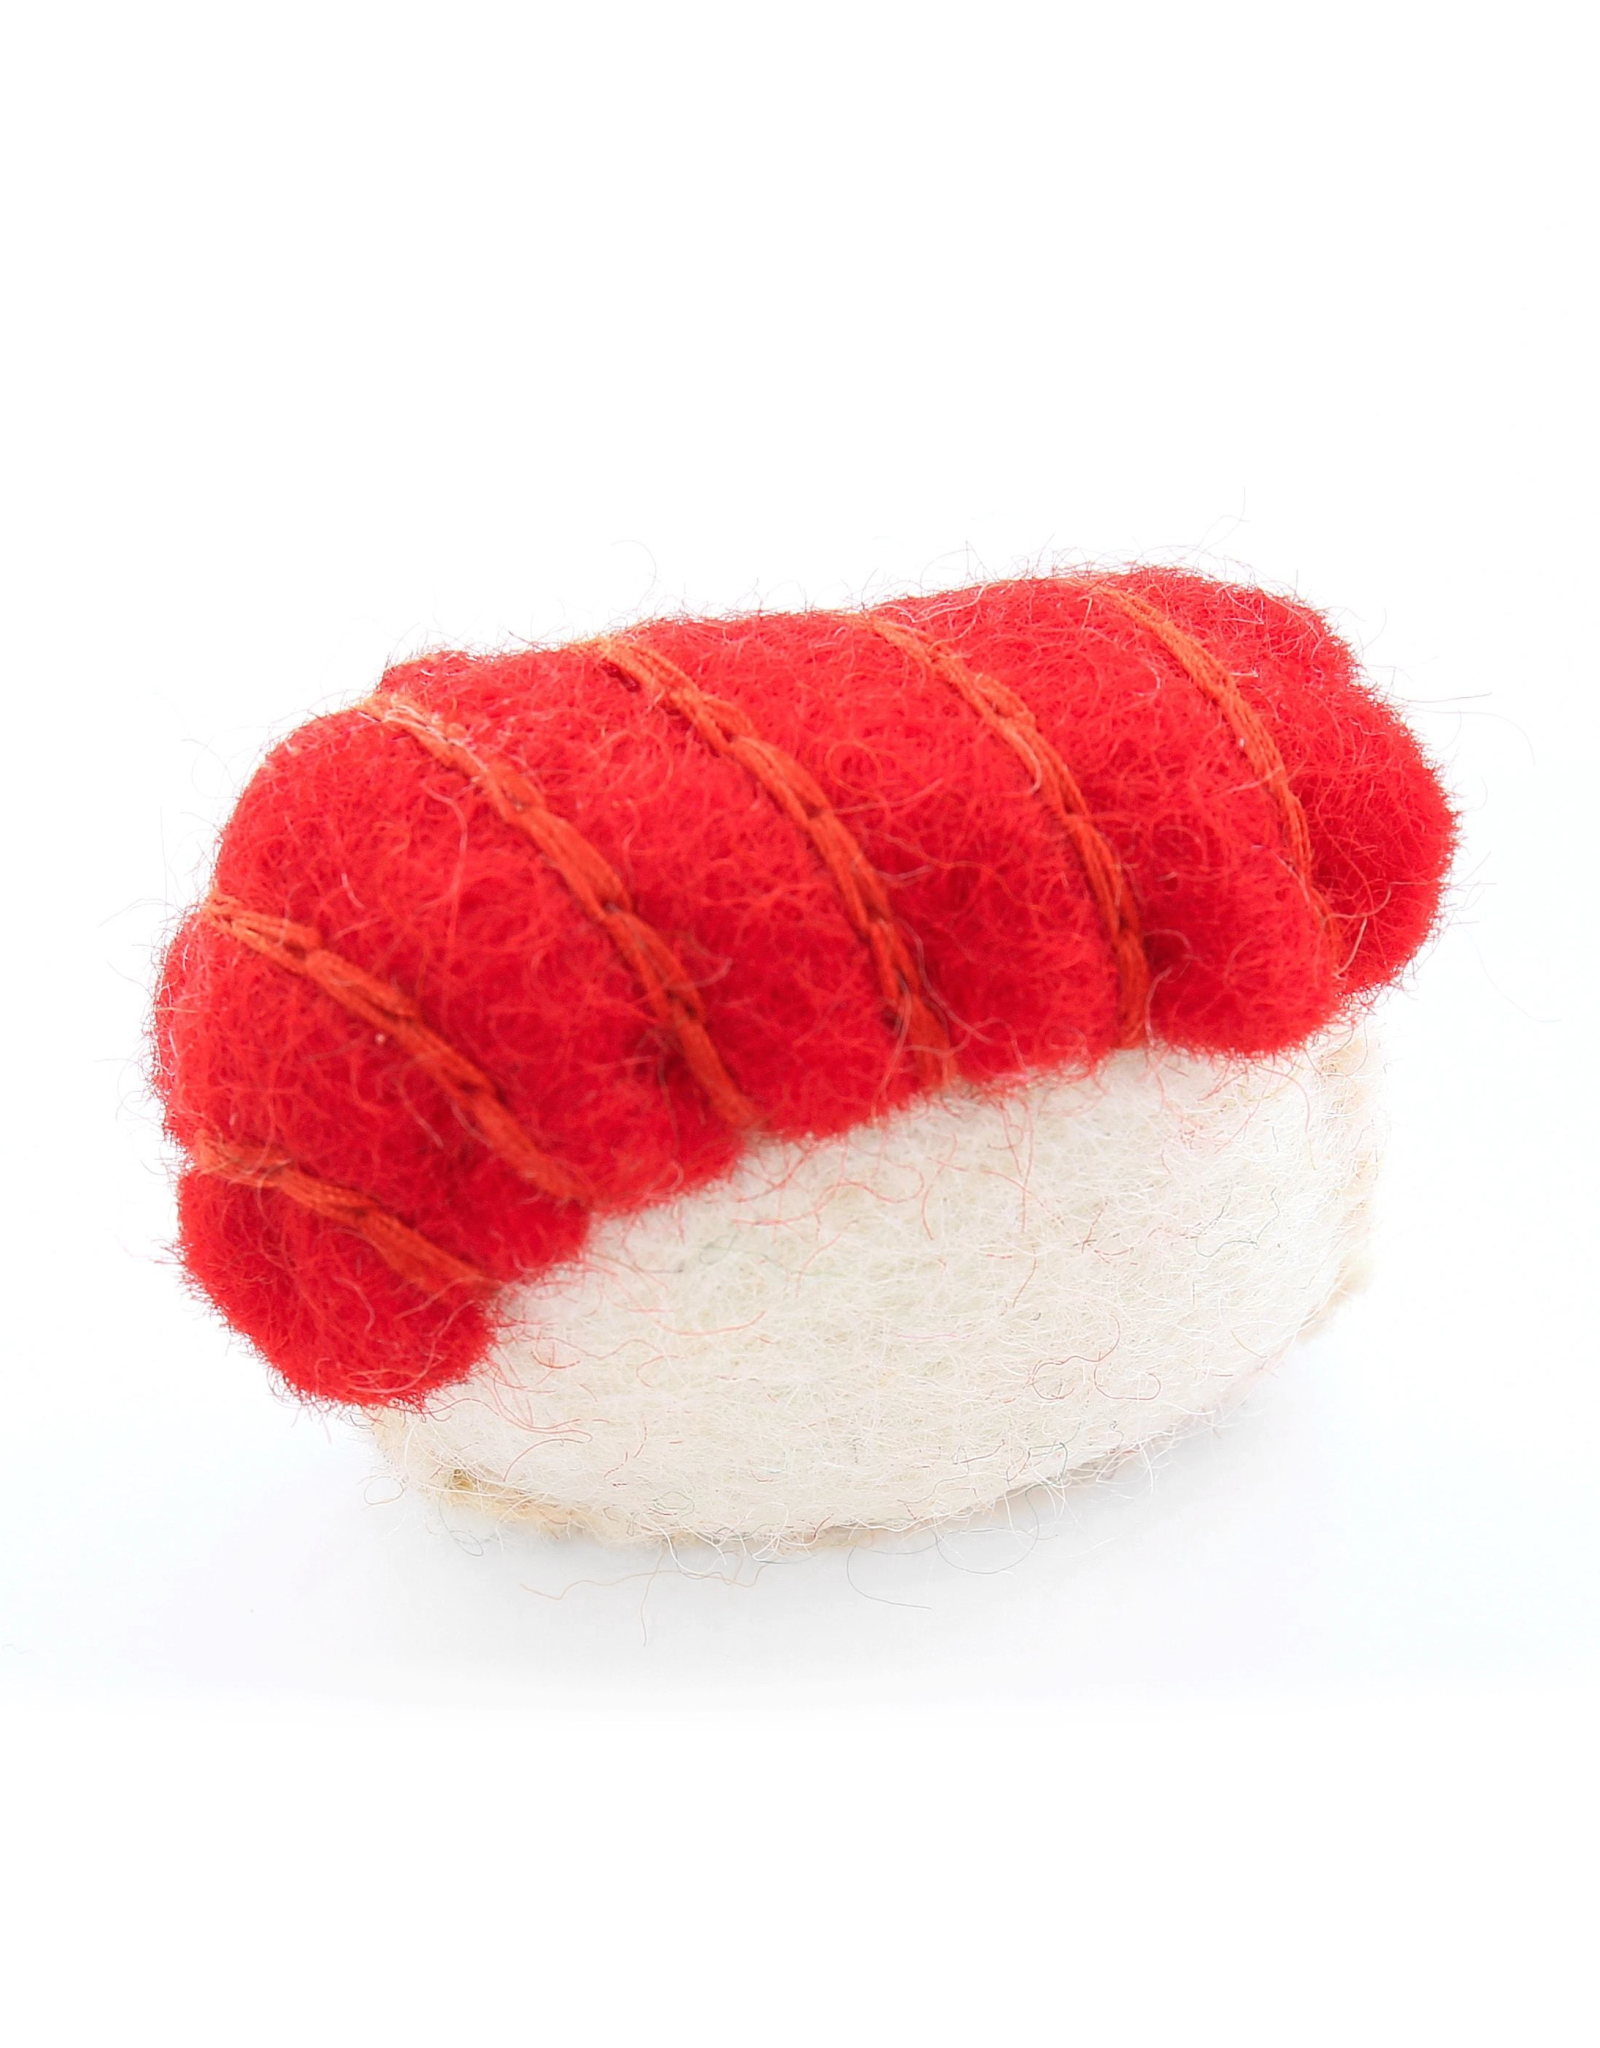 The Foggy Dog Sushi Cat Toy